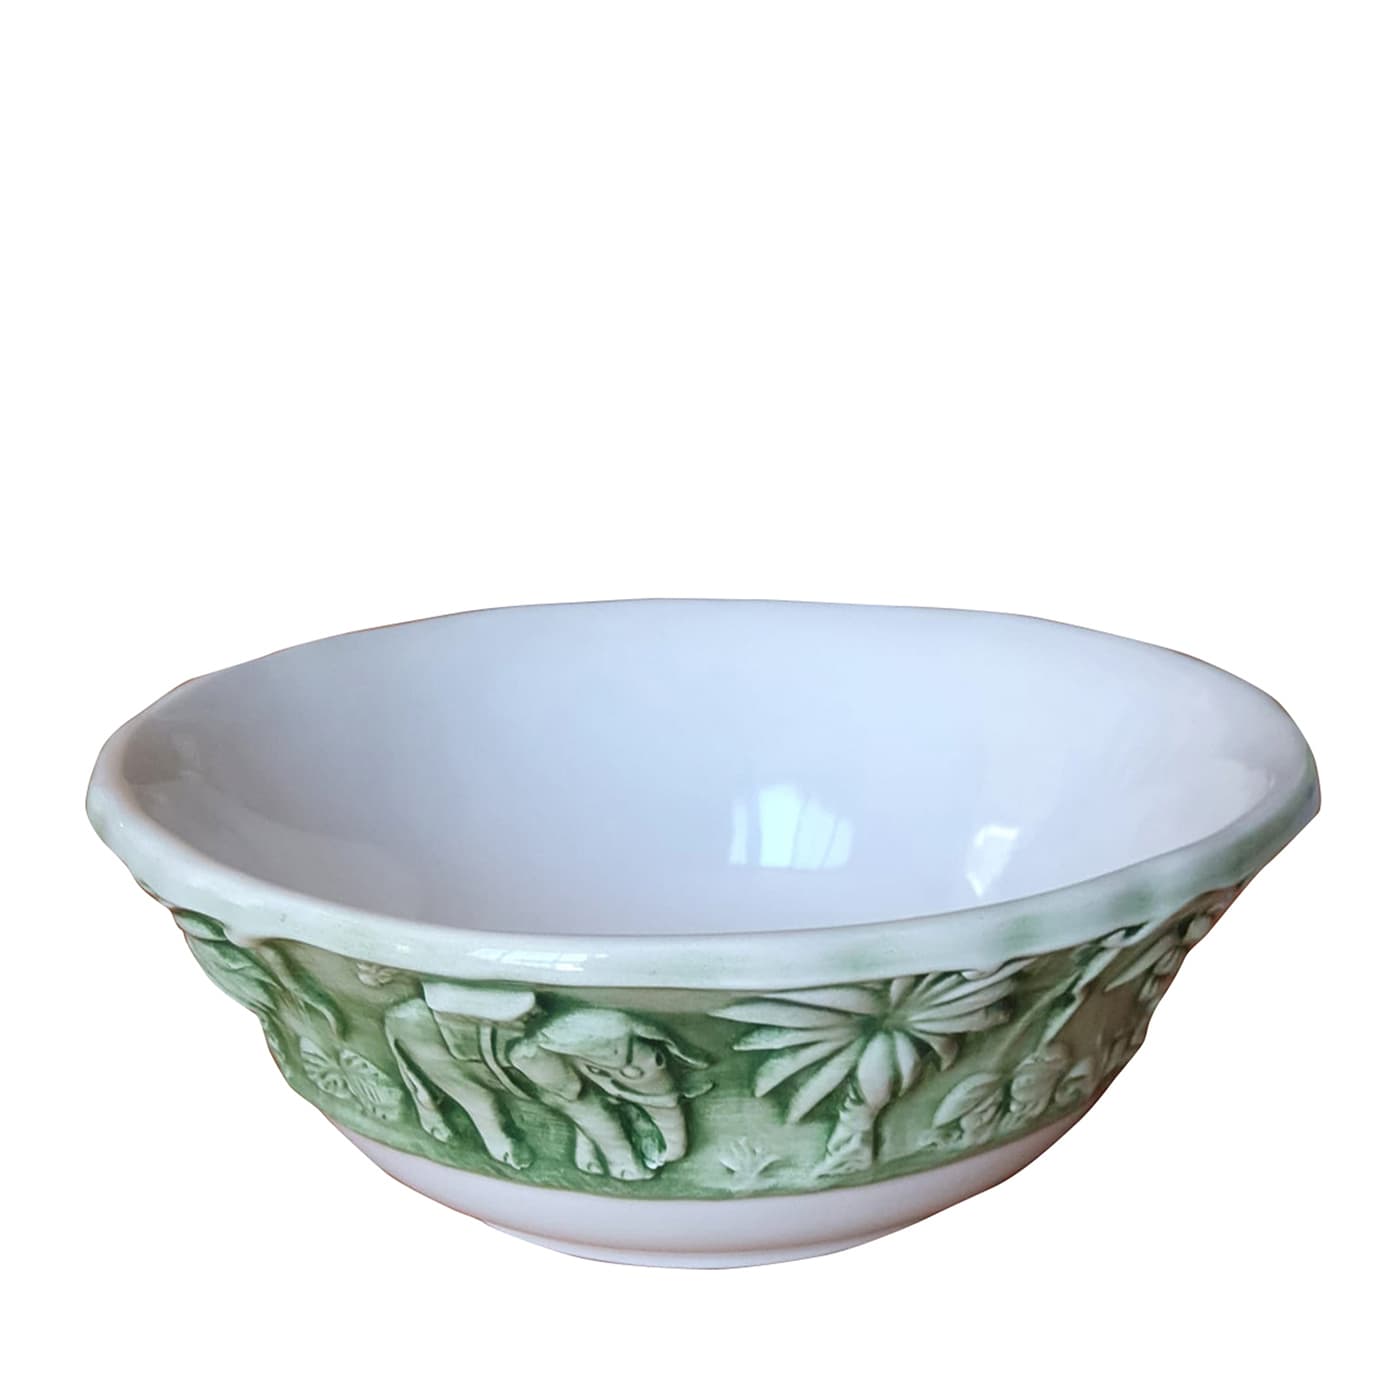 Set of 2 Green La Menagerie Ottomane Bowls  - Les Ottomans